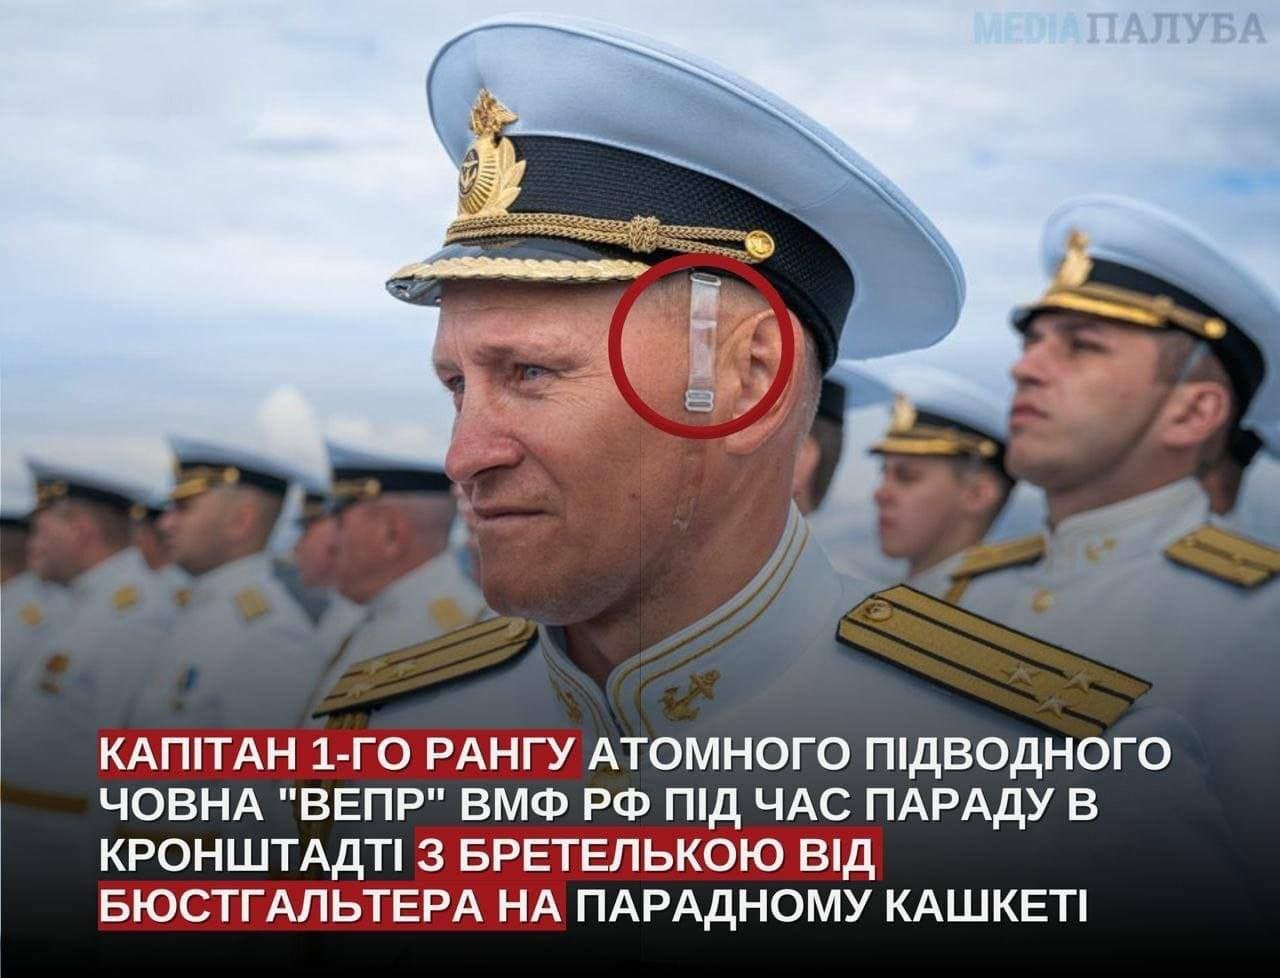 Капитан атомной подлодки "Вепрь" ВМФ РФ пришел на парад с бретелькой для бюстгальтера 